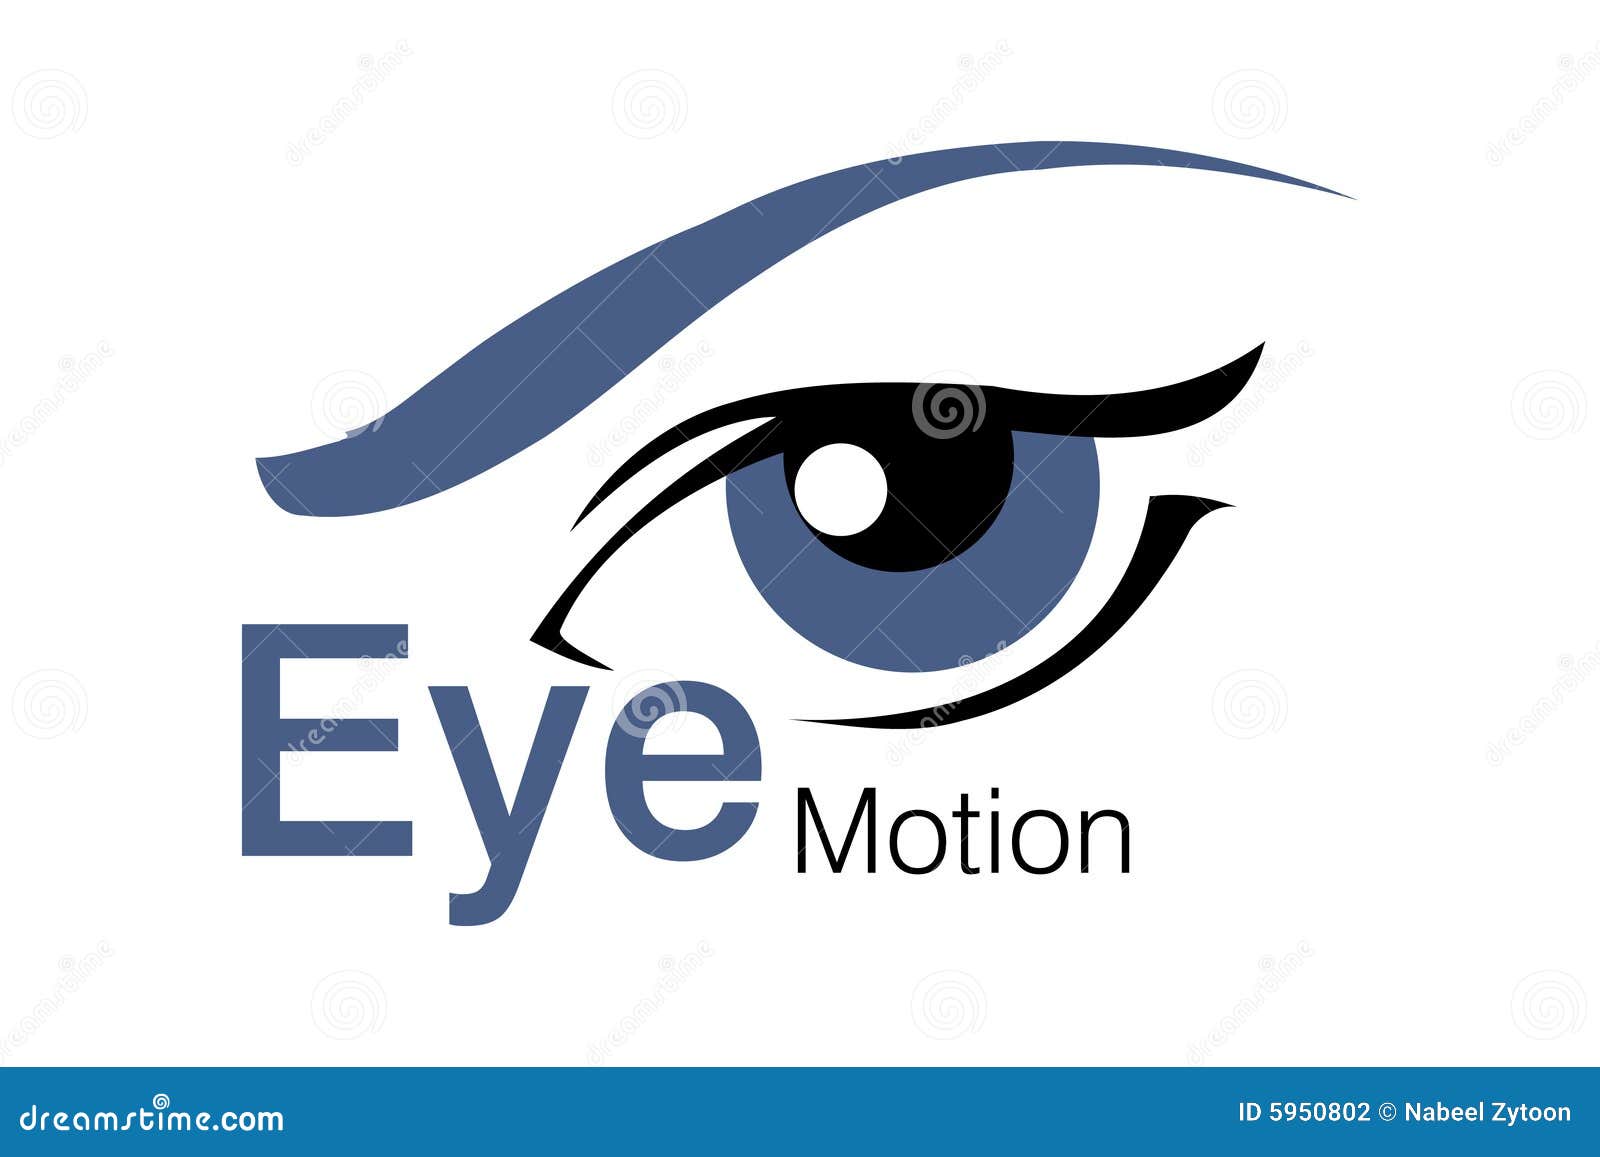 https://thumbs.dreamstime.com/z/eye-motion-logo-5950802.jpg